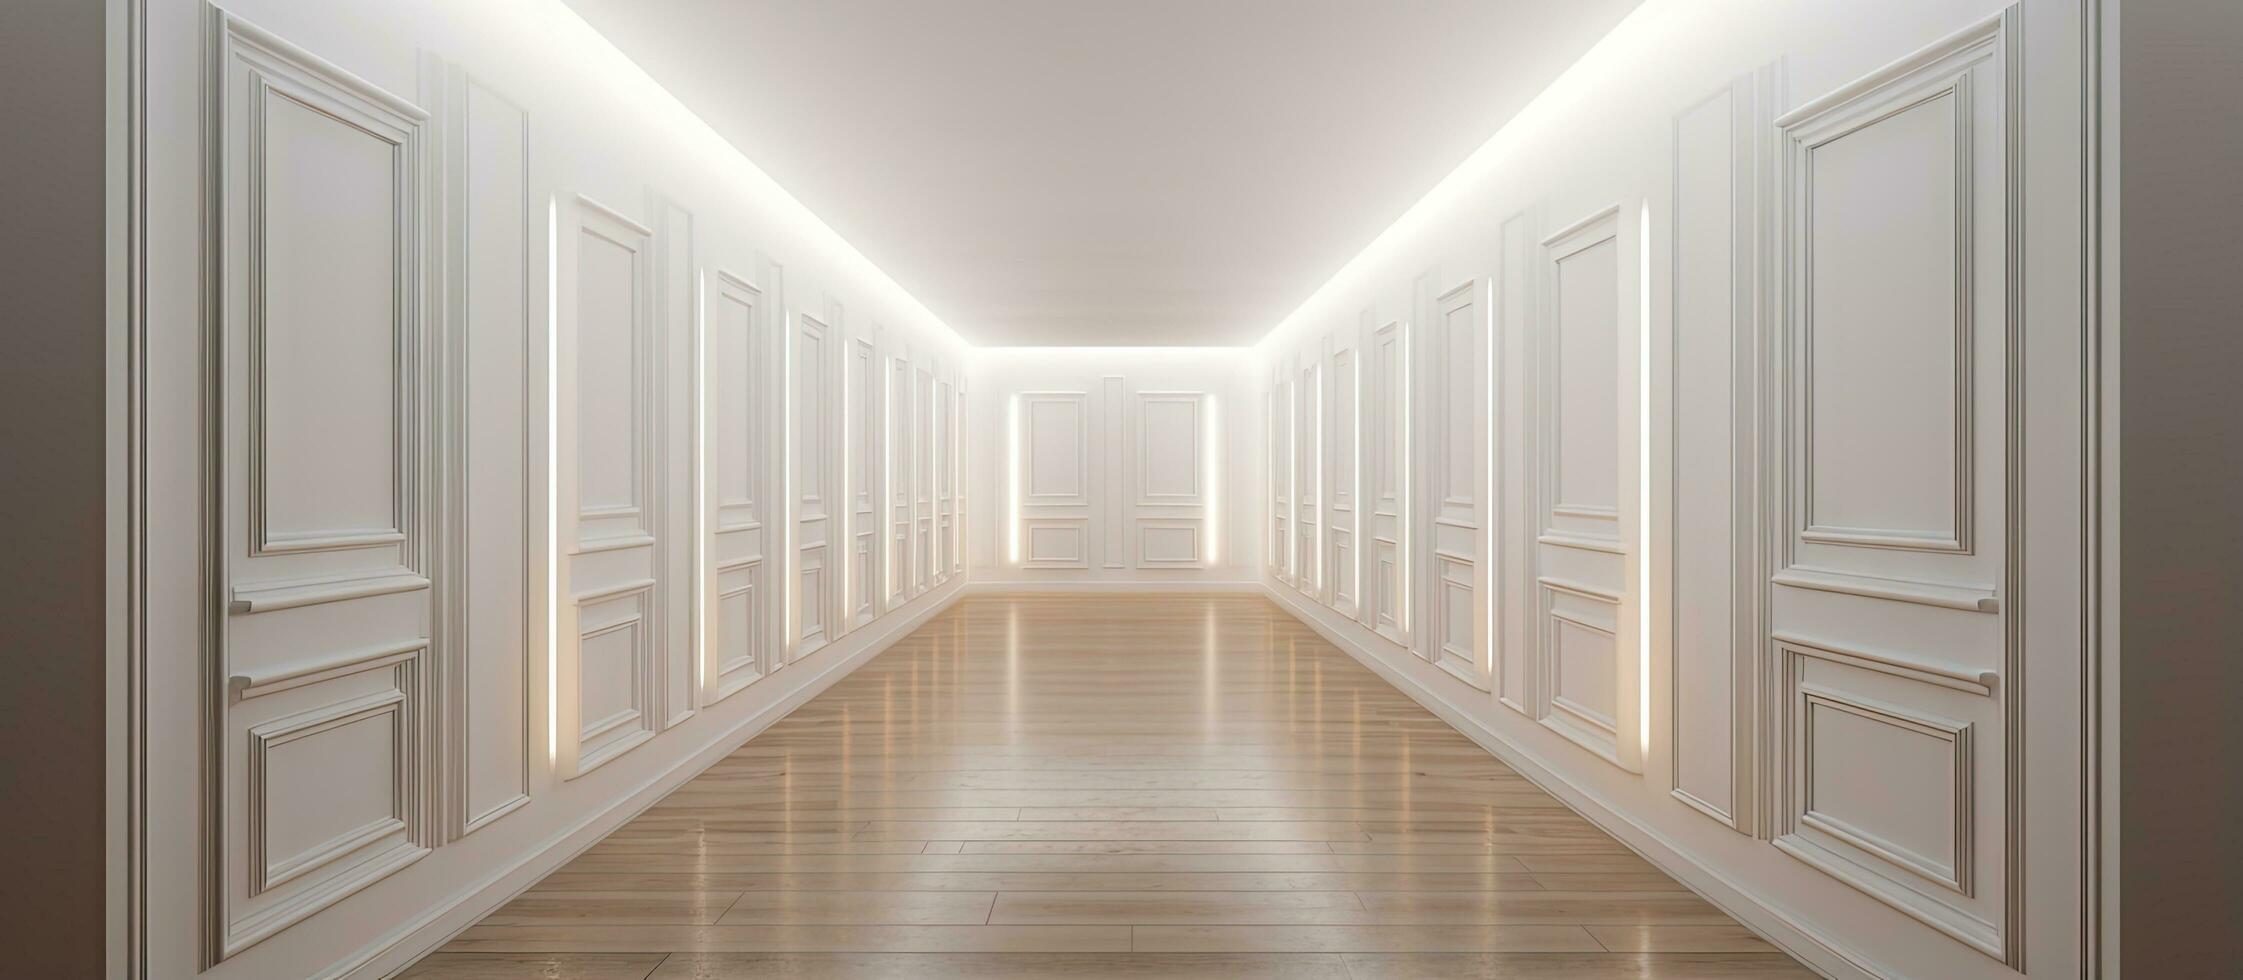 ljus trång korridor med flera olika vit walled dörrar och en skimrande lampa ovan trä- golv foto